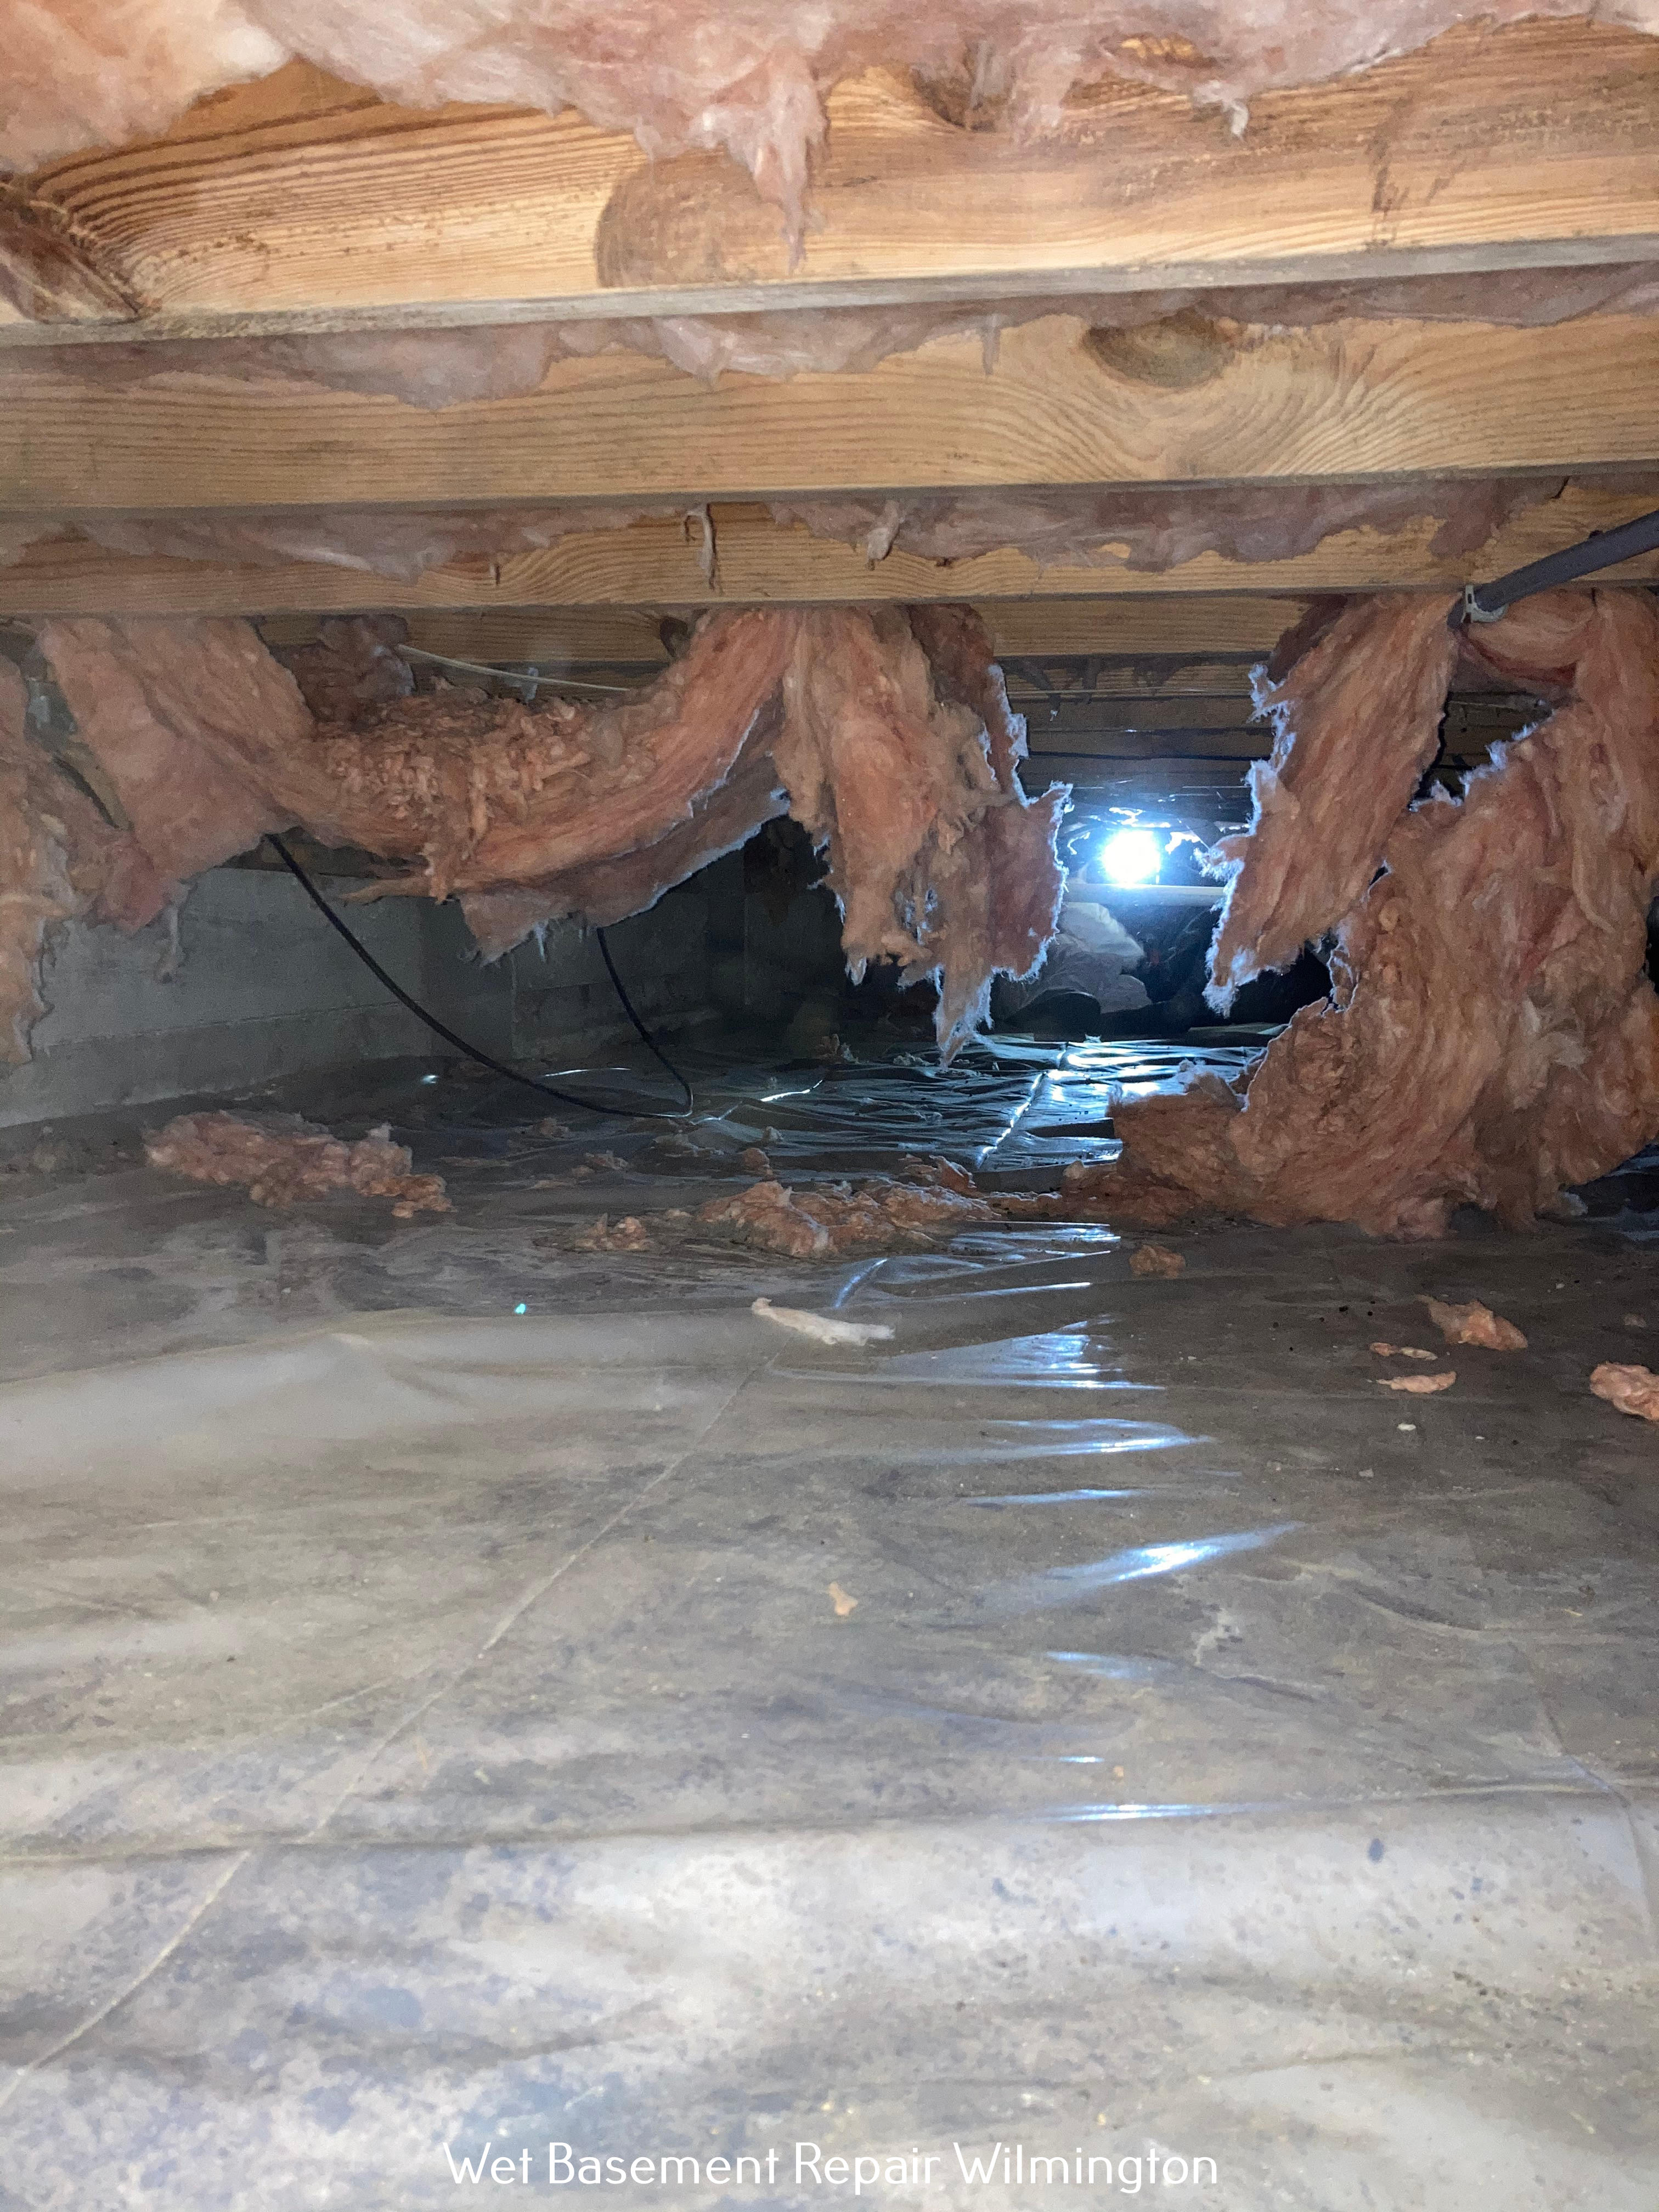 Wilmington's Crawl Space Ninja Outlines the Dangers of Neglecting Basement Waterproofing